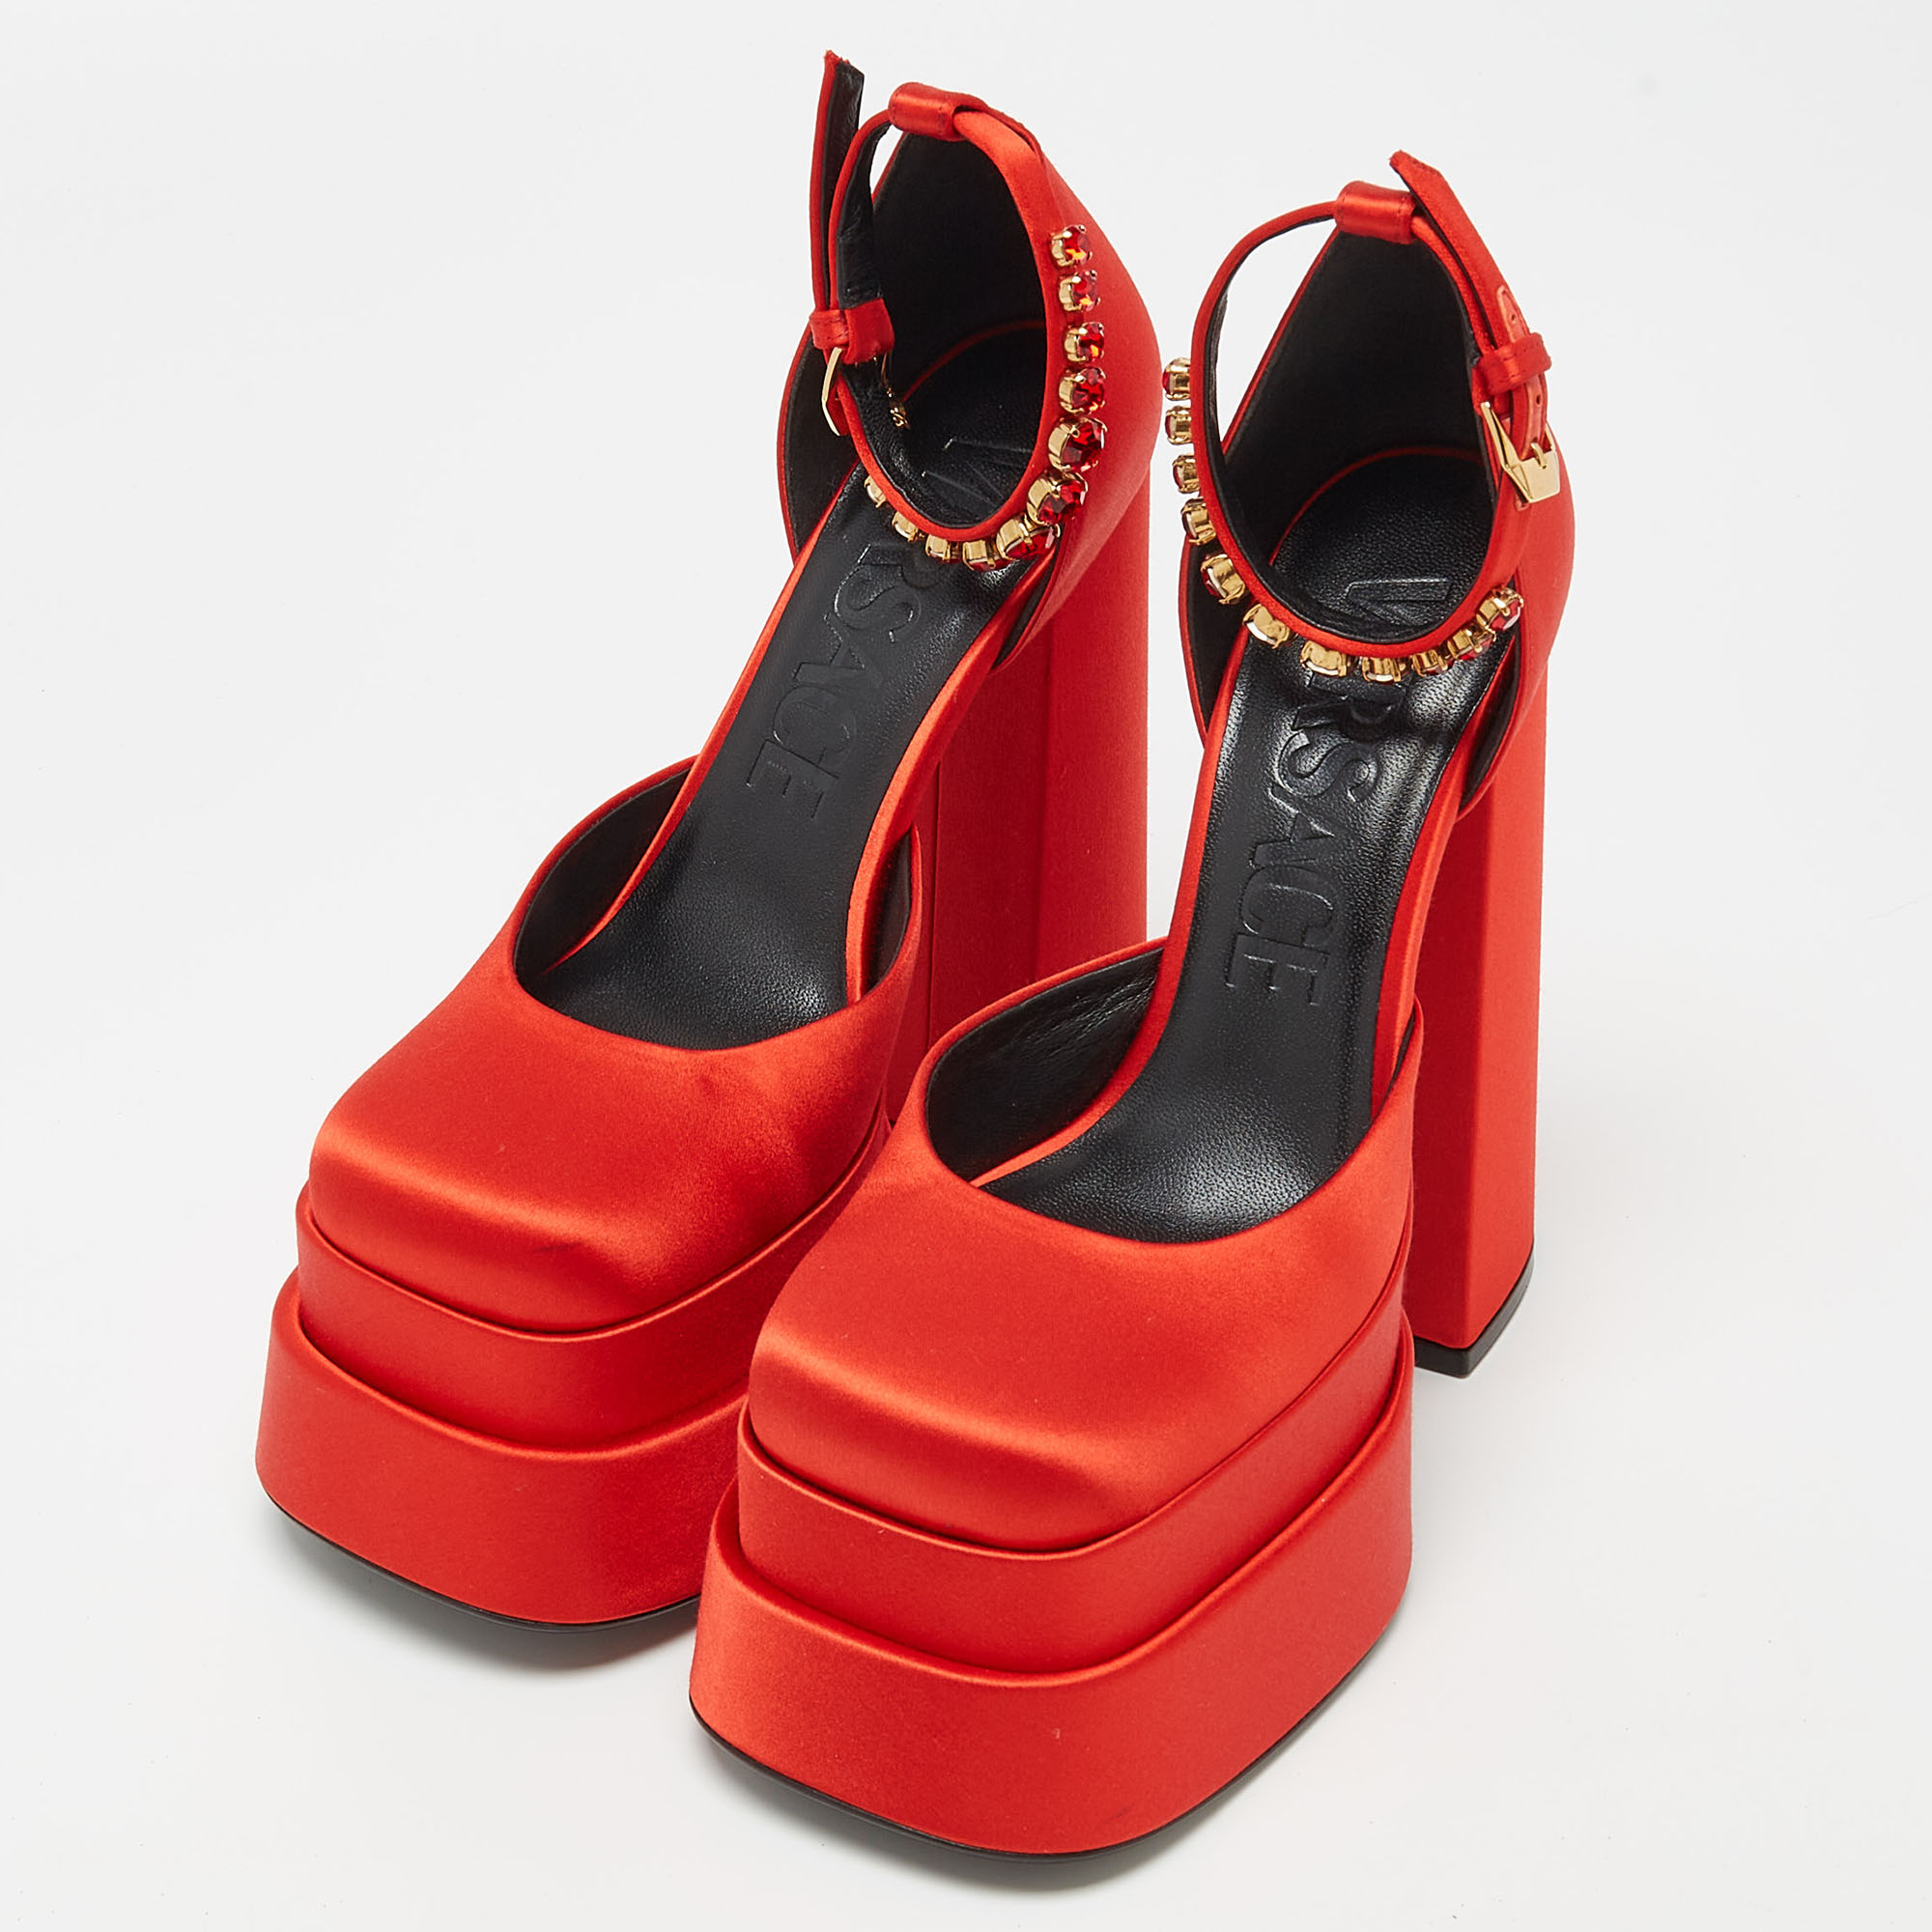 

Versace Red Satin Crystal Embellished Platform Block Heel Ankle Strap Pumps Size